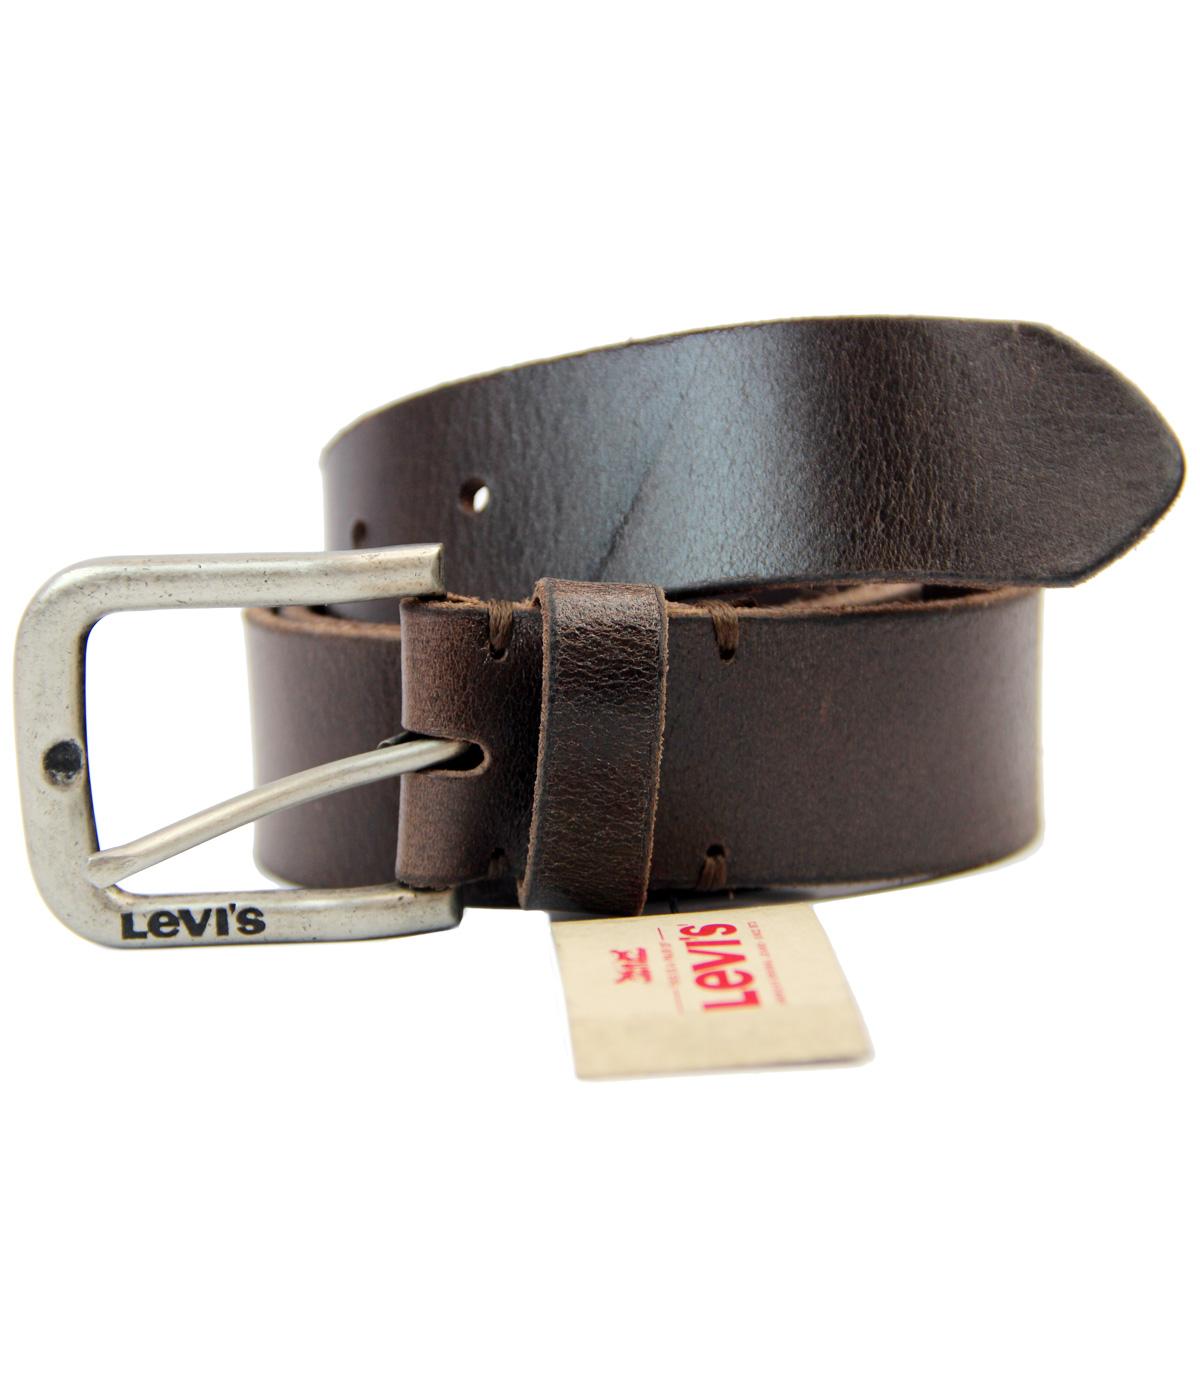 levis full grain leather belt